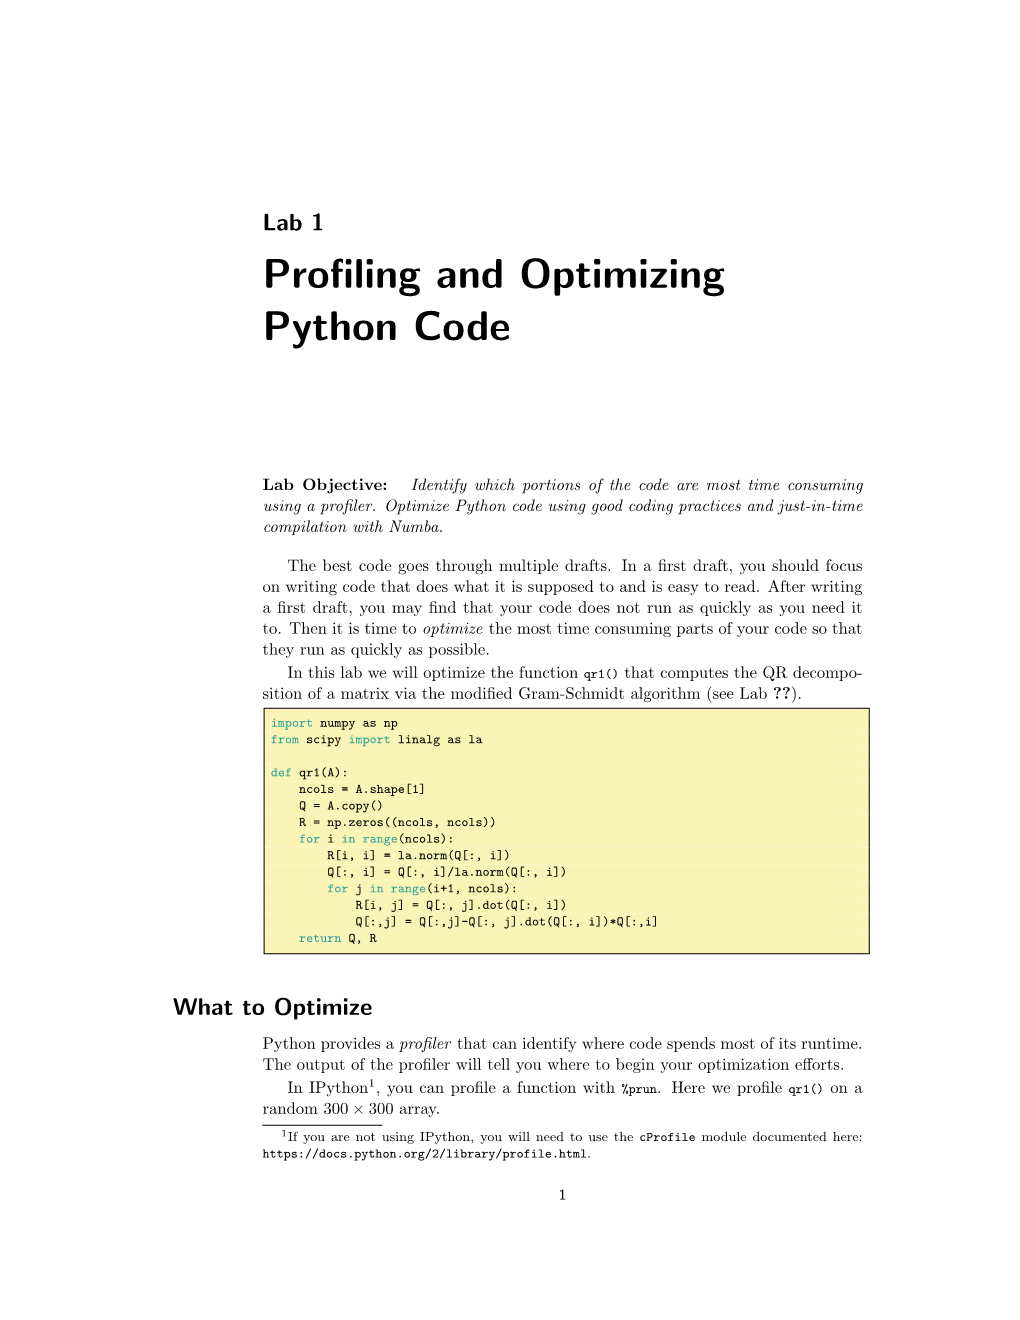 Profiling and Optimizing Python Code